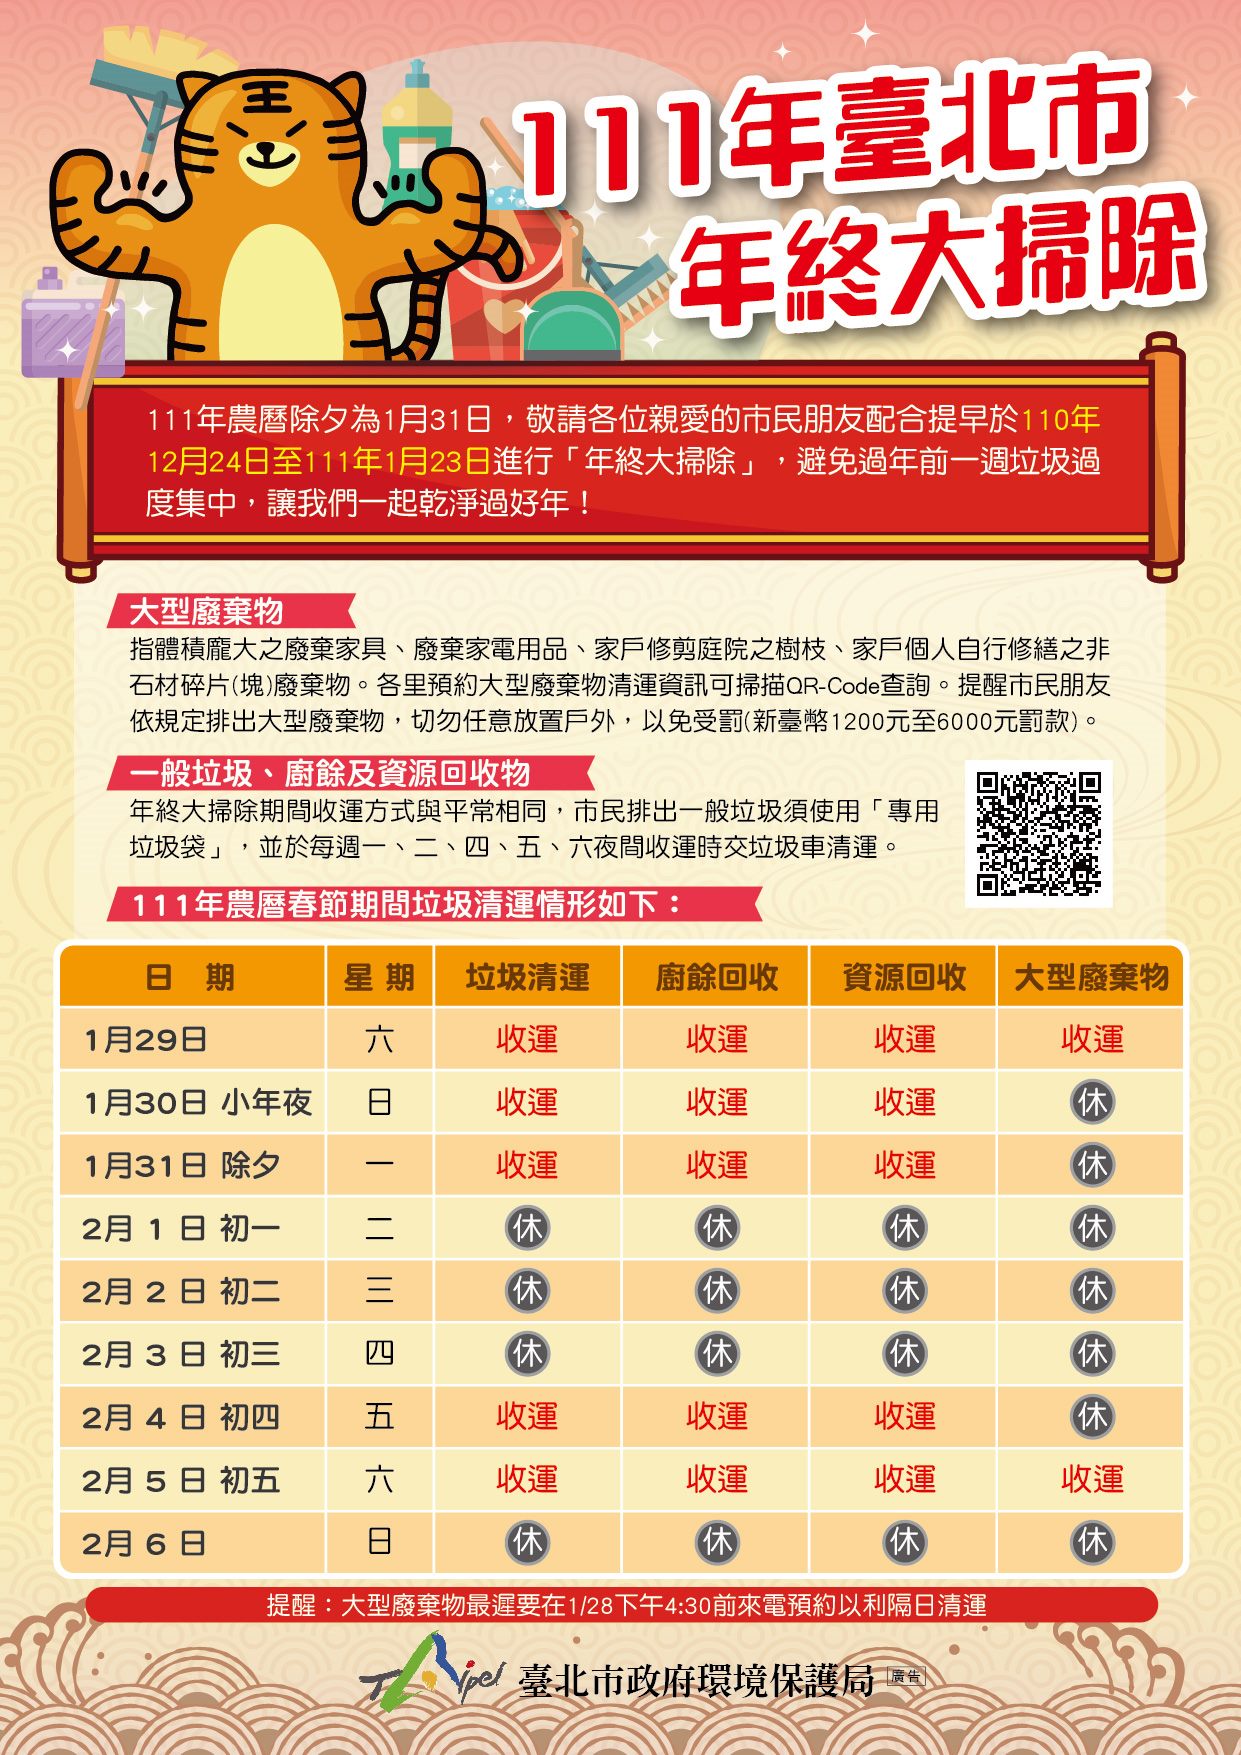 Buổi trưa và đêm giao thừa (ngày 31/1 dương lịch) sẽ tăng thêm các chuyến xe thu gom rác và tạm dừng từ mùng 1 đến mùng 3 Tết. (Nguồn ảnh: Cục Bảo vệ Môi trường của chính quyền thành phố Đài Bắc)